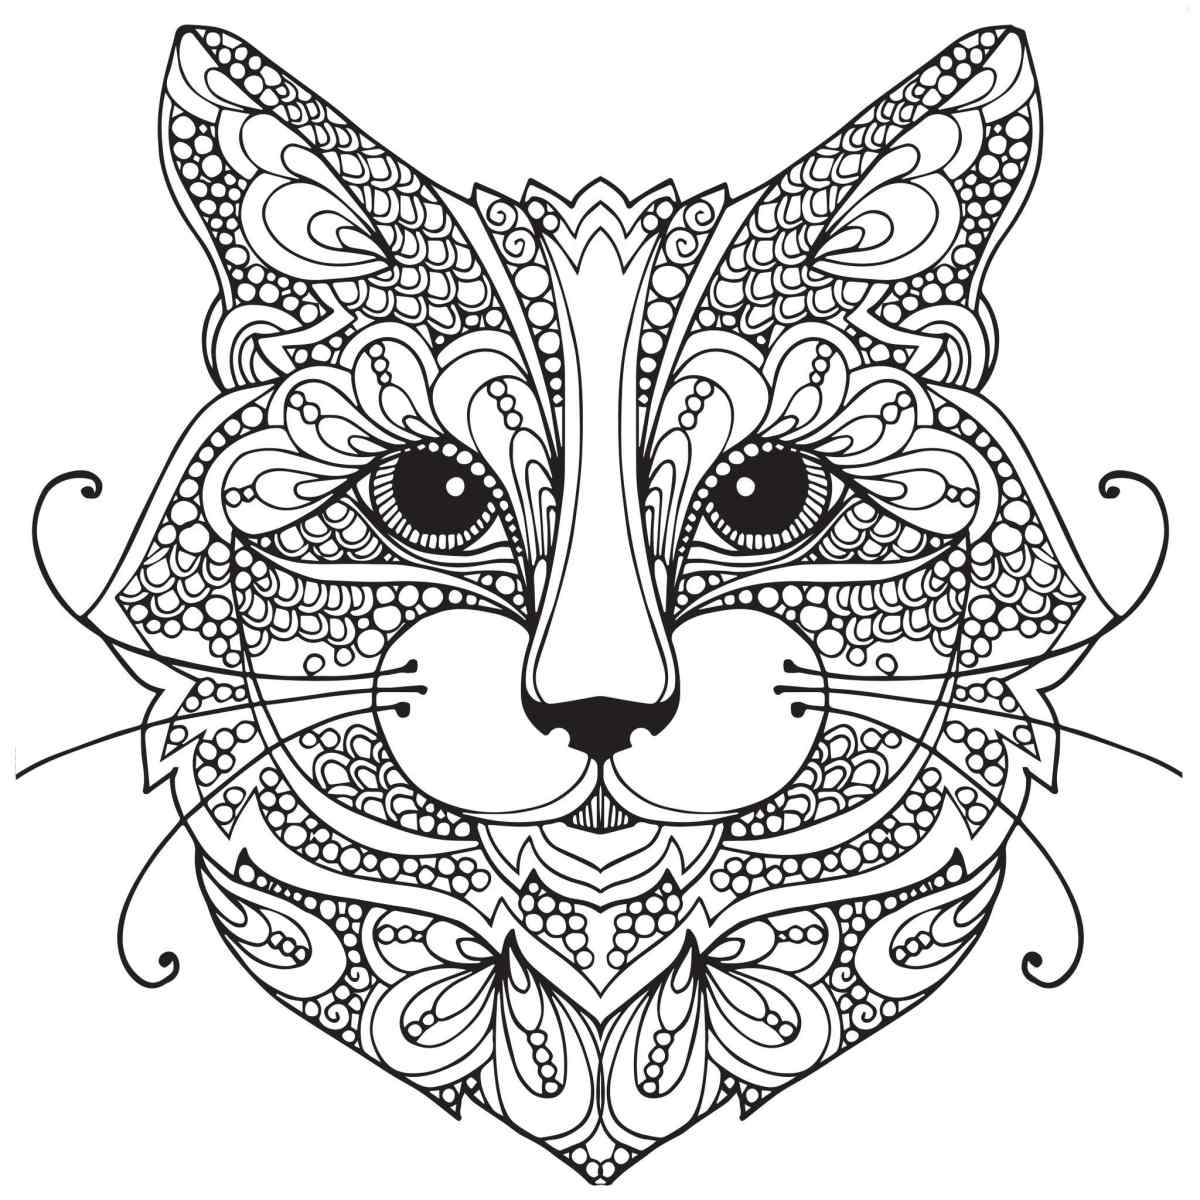 Kolorowanki dla dorosłych - wydrukuj i pokoloruj wspaniałą głowę kota